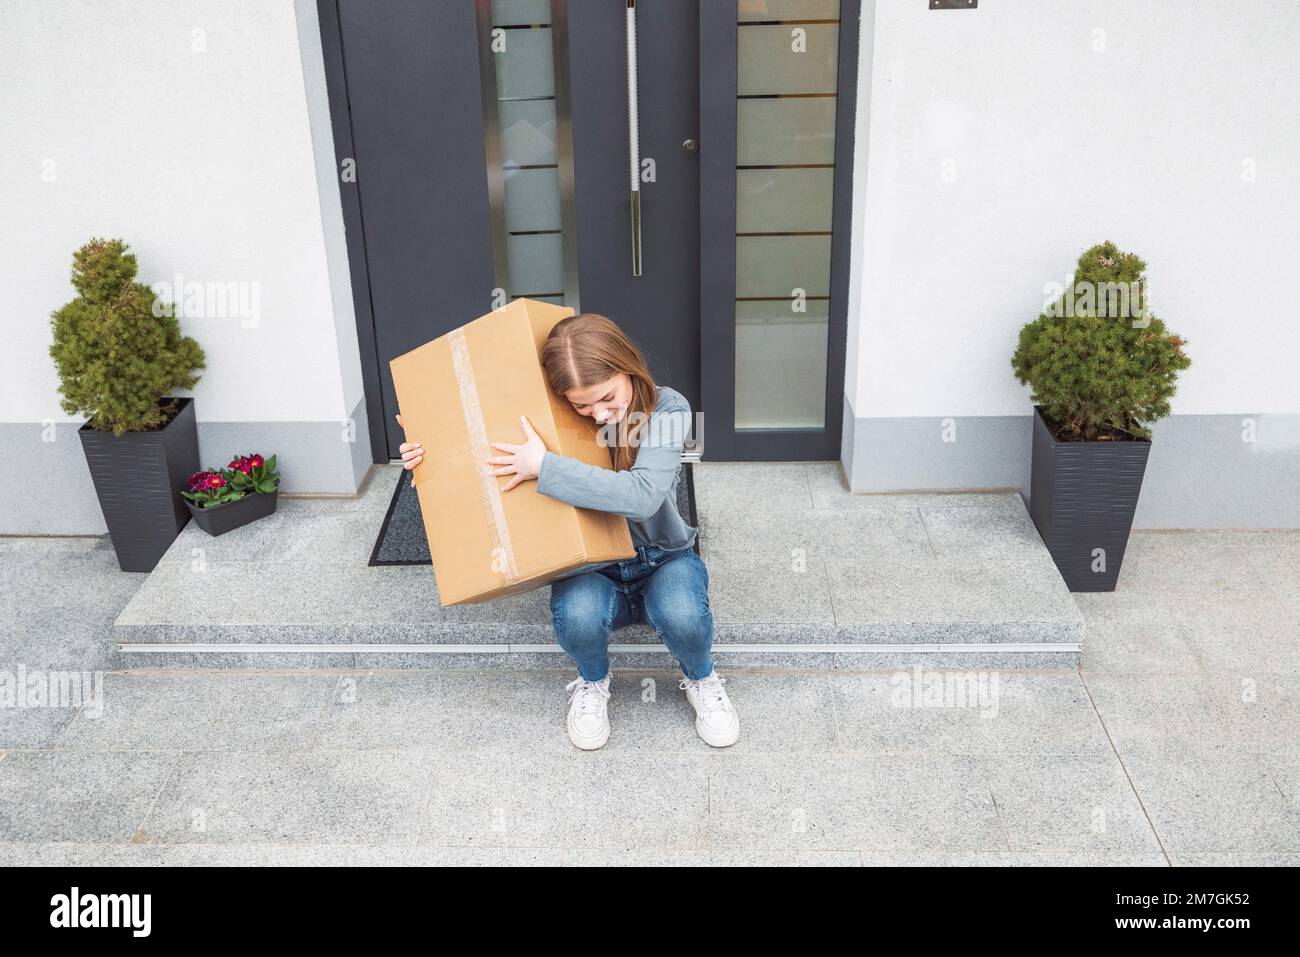 Eine weiße Frau, die auf einer Stufe vor der Haustür sitzt und eine Kiste umarmt, die gerade mit der Post kam Stockfoto